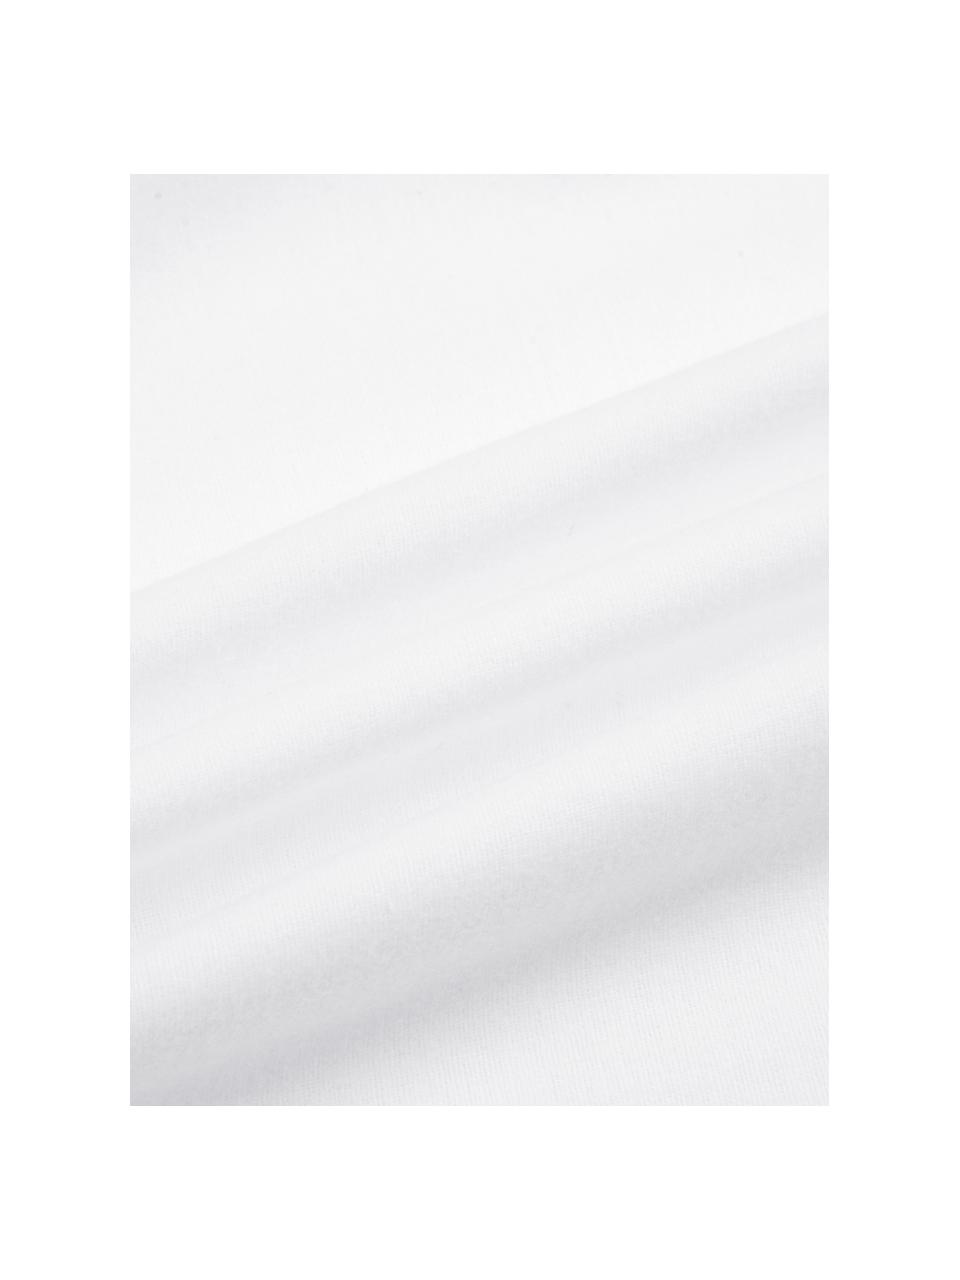 Flanell-Bettwäsche Erica in Weiss, Webart: Flanell Flanell ist ein k, Weiss, 240 x 220 cm